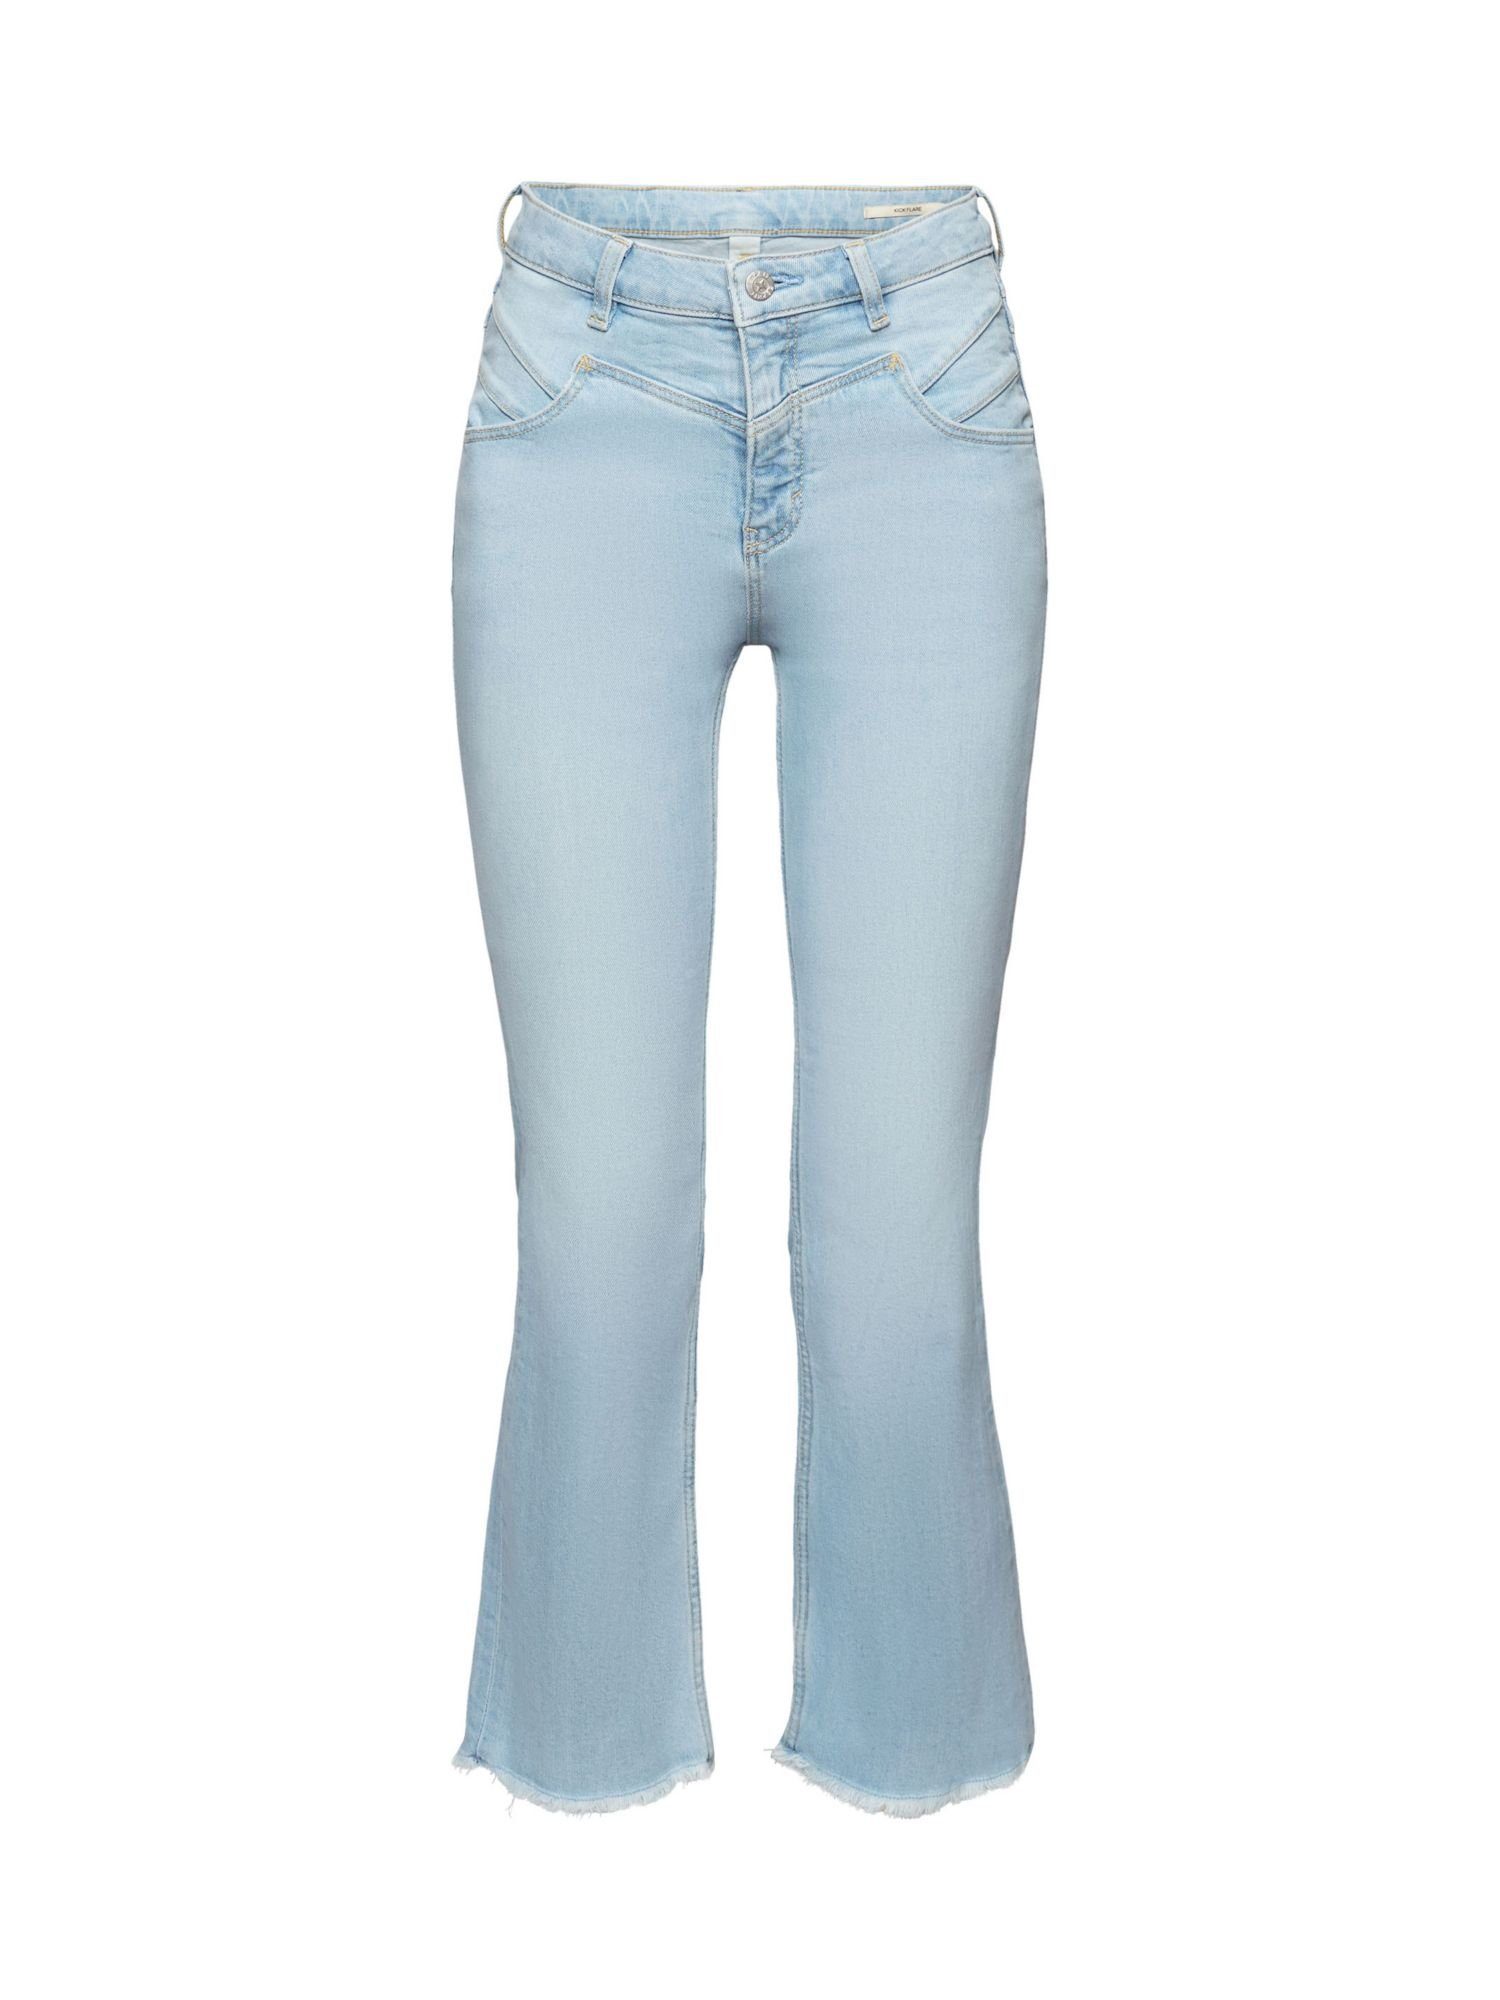 Esprit 7/8-Jeans Ausgestellte Baumwolljeans mit mittlerer Bundhöhe BLUE LIGHT WASHED